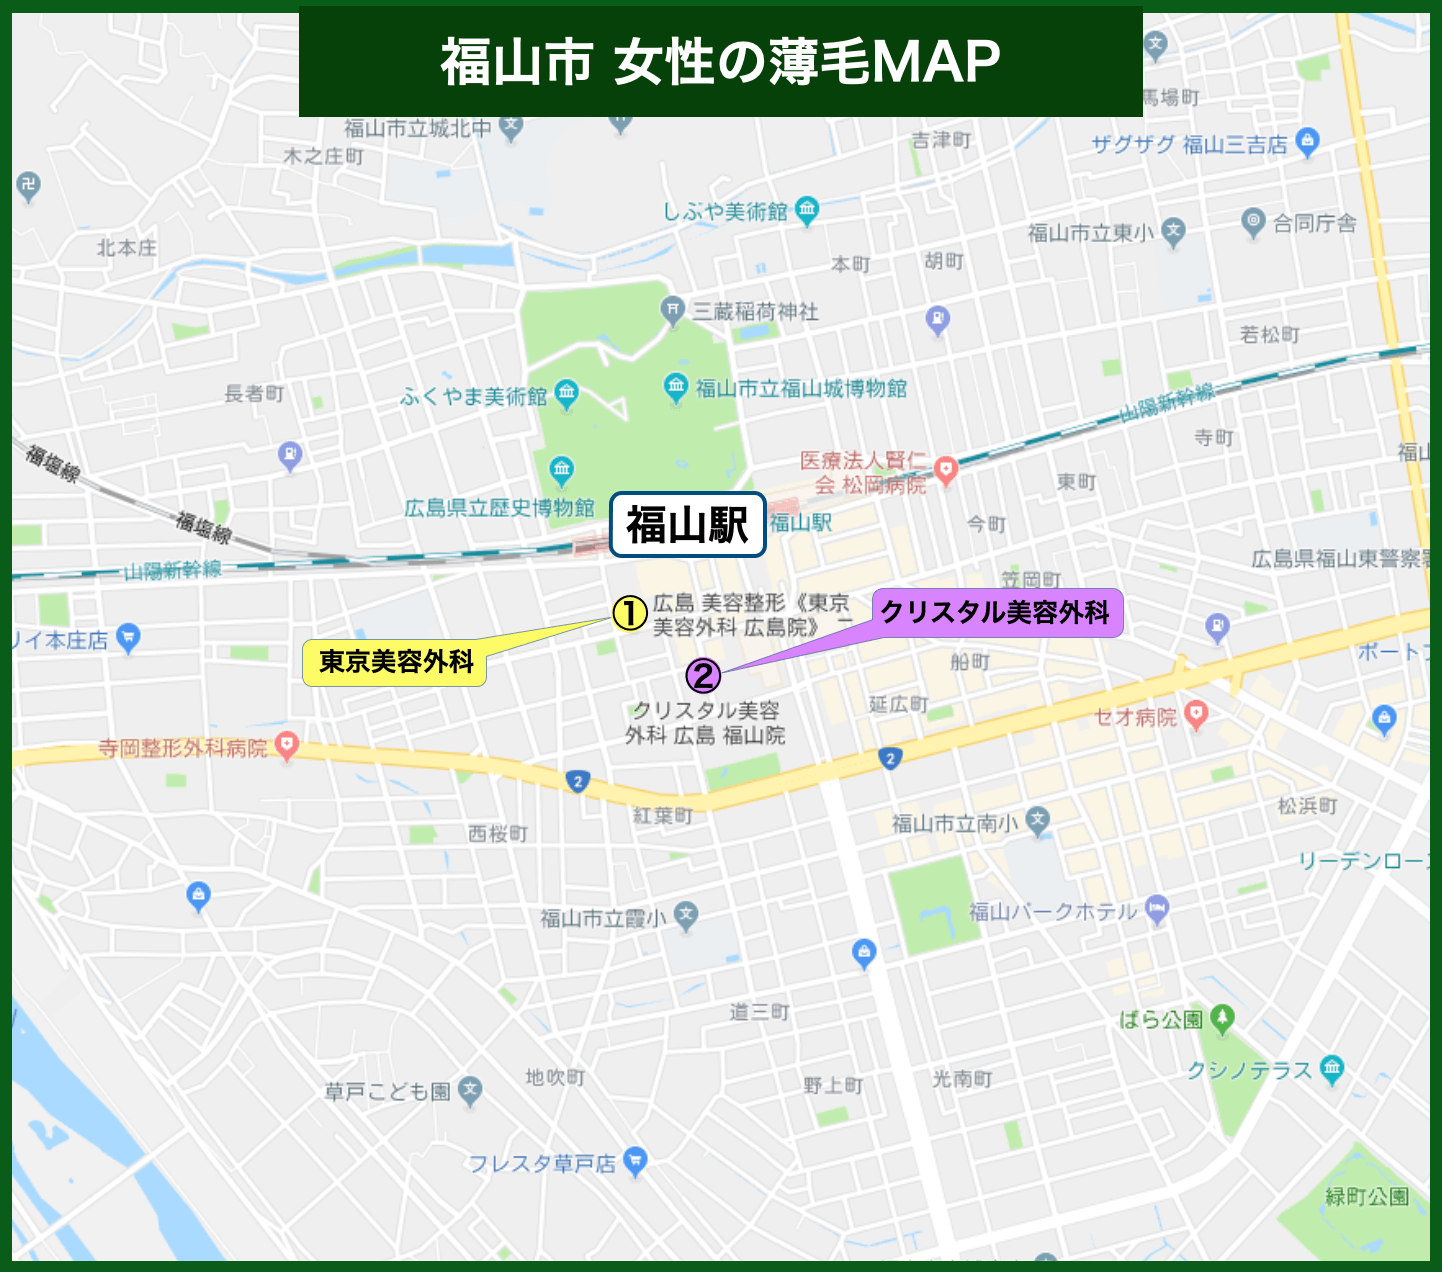 福山市女性の薄毛MAP